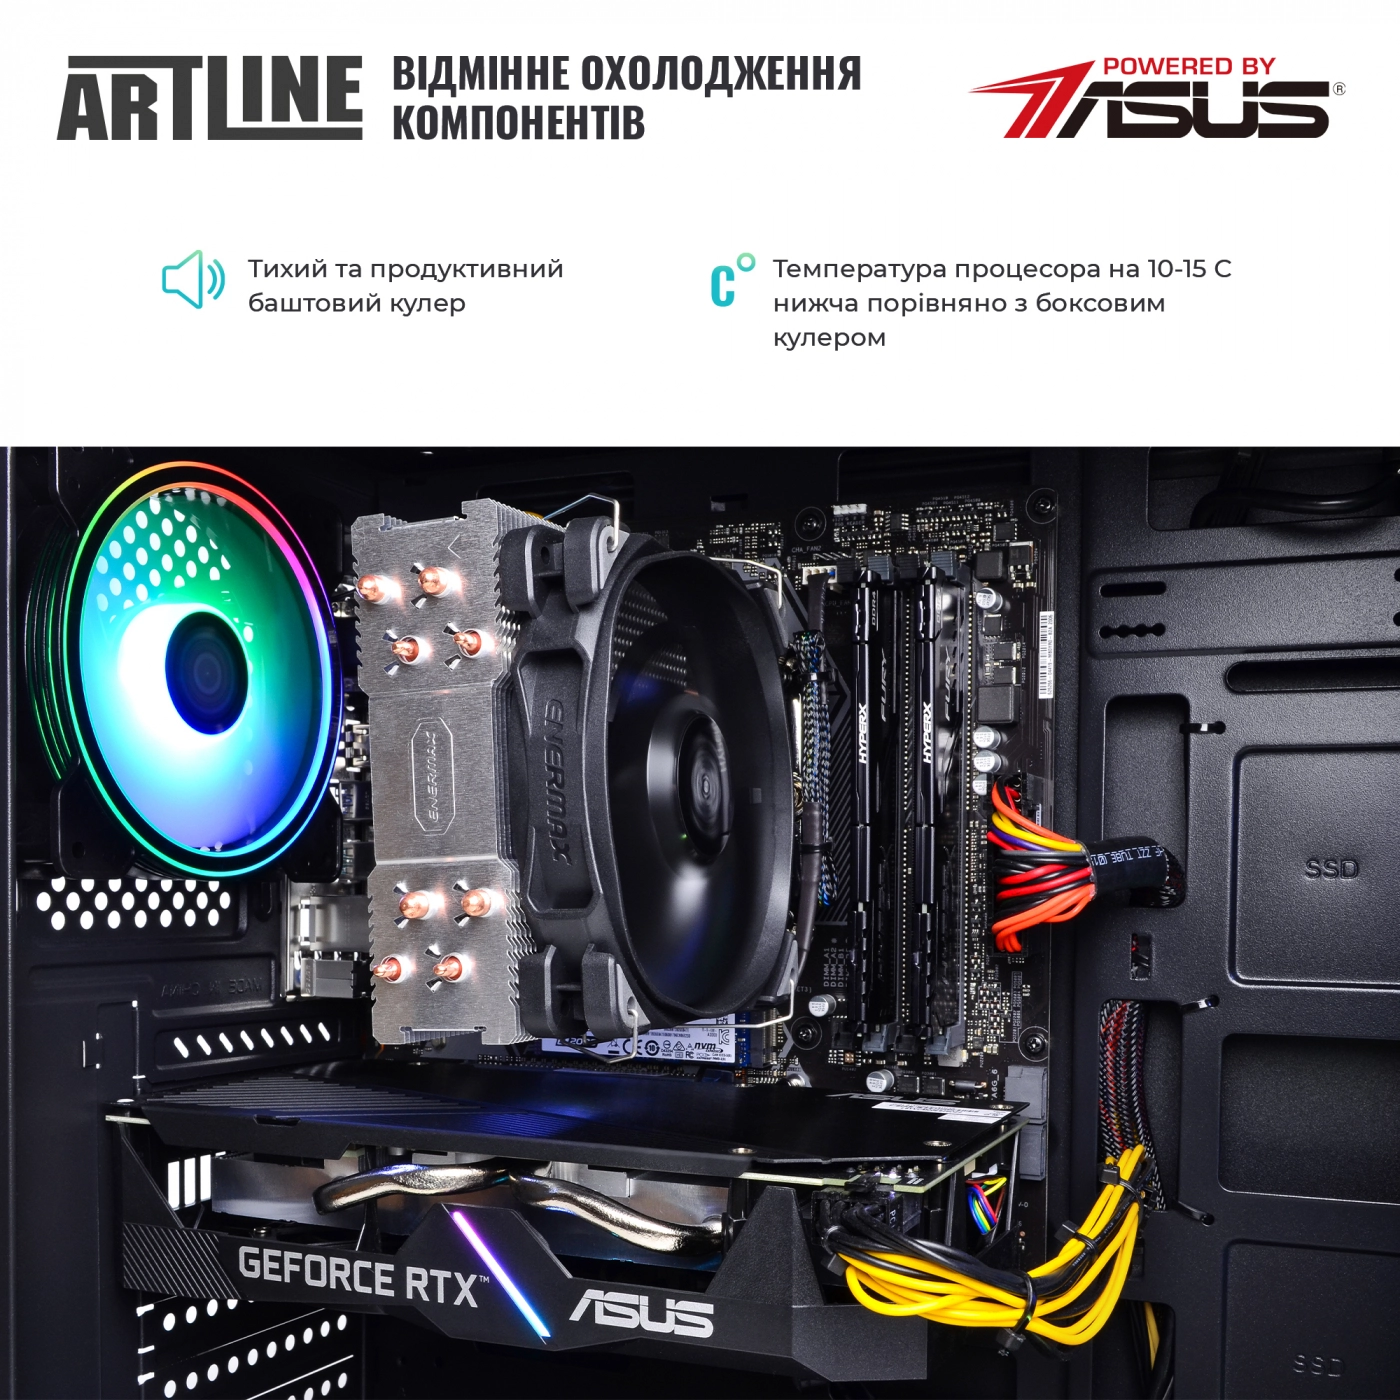 Купить Компьютер ARTLINE Gaming X76v01 - фото 7